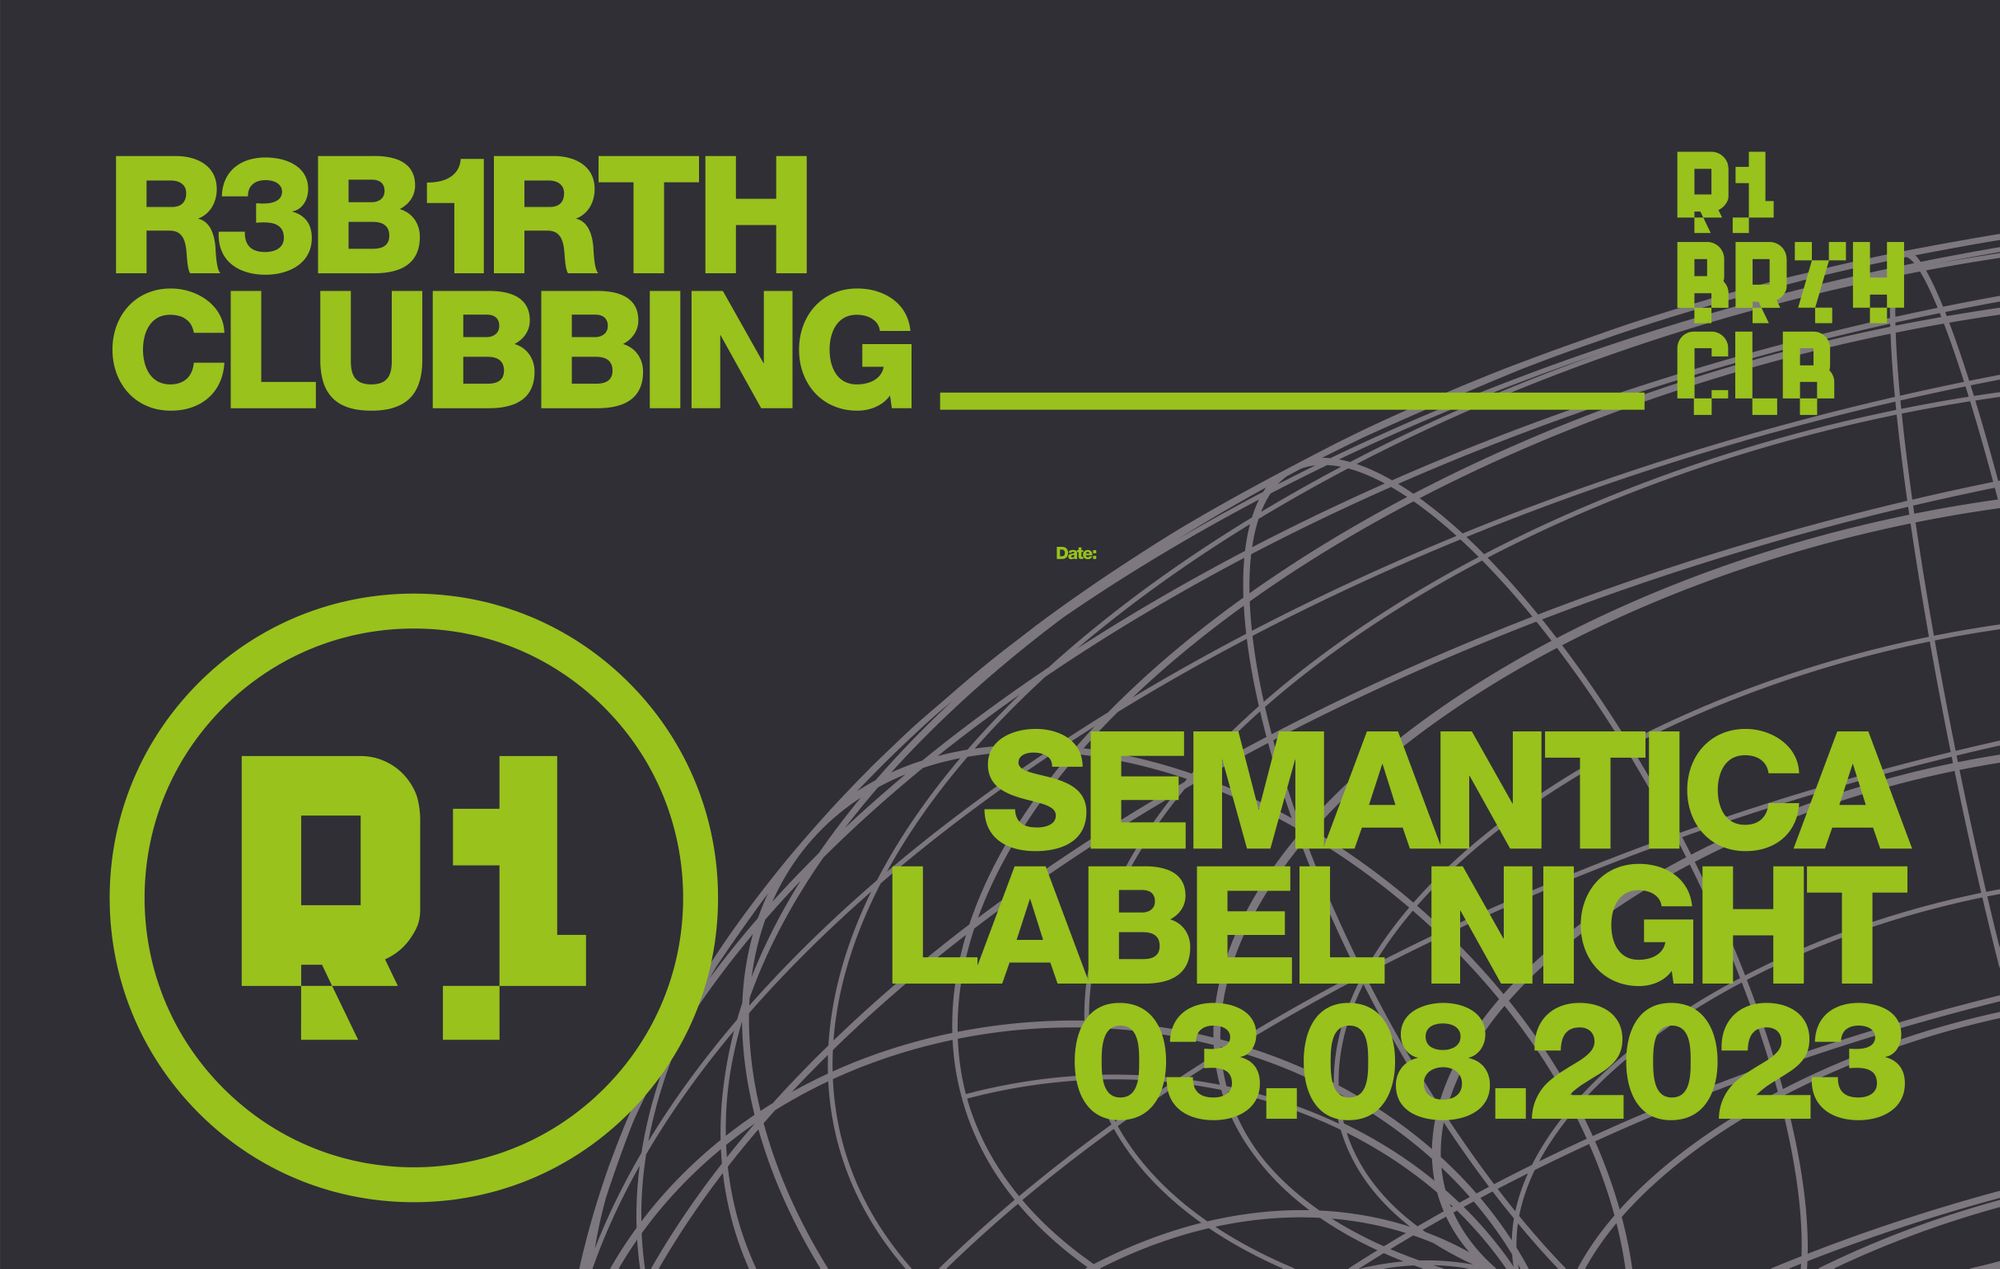 Noche de Semántica Records en el nuevo club madrileño Rebirth